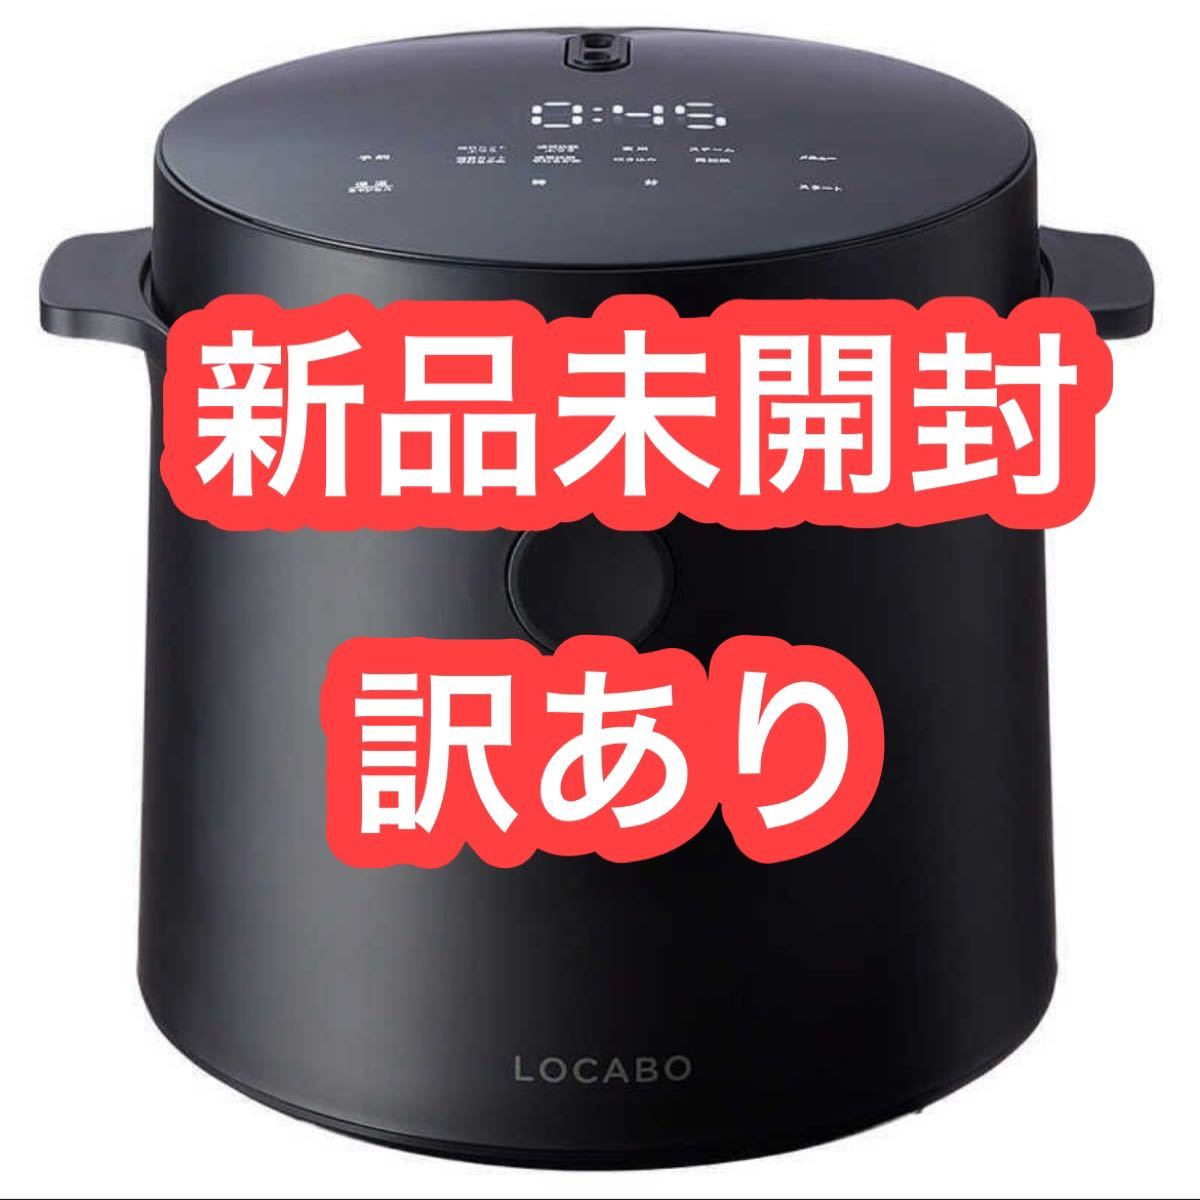 最安値挑戦】 【新品未使用】ロカボ 糖質カット炊飯器LOCABO JM-C20E-B ブラック - 炊飯器